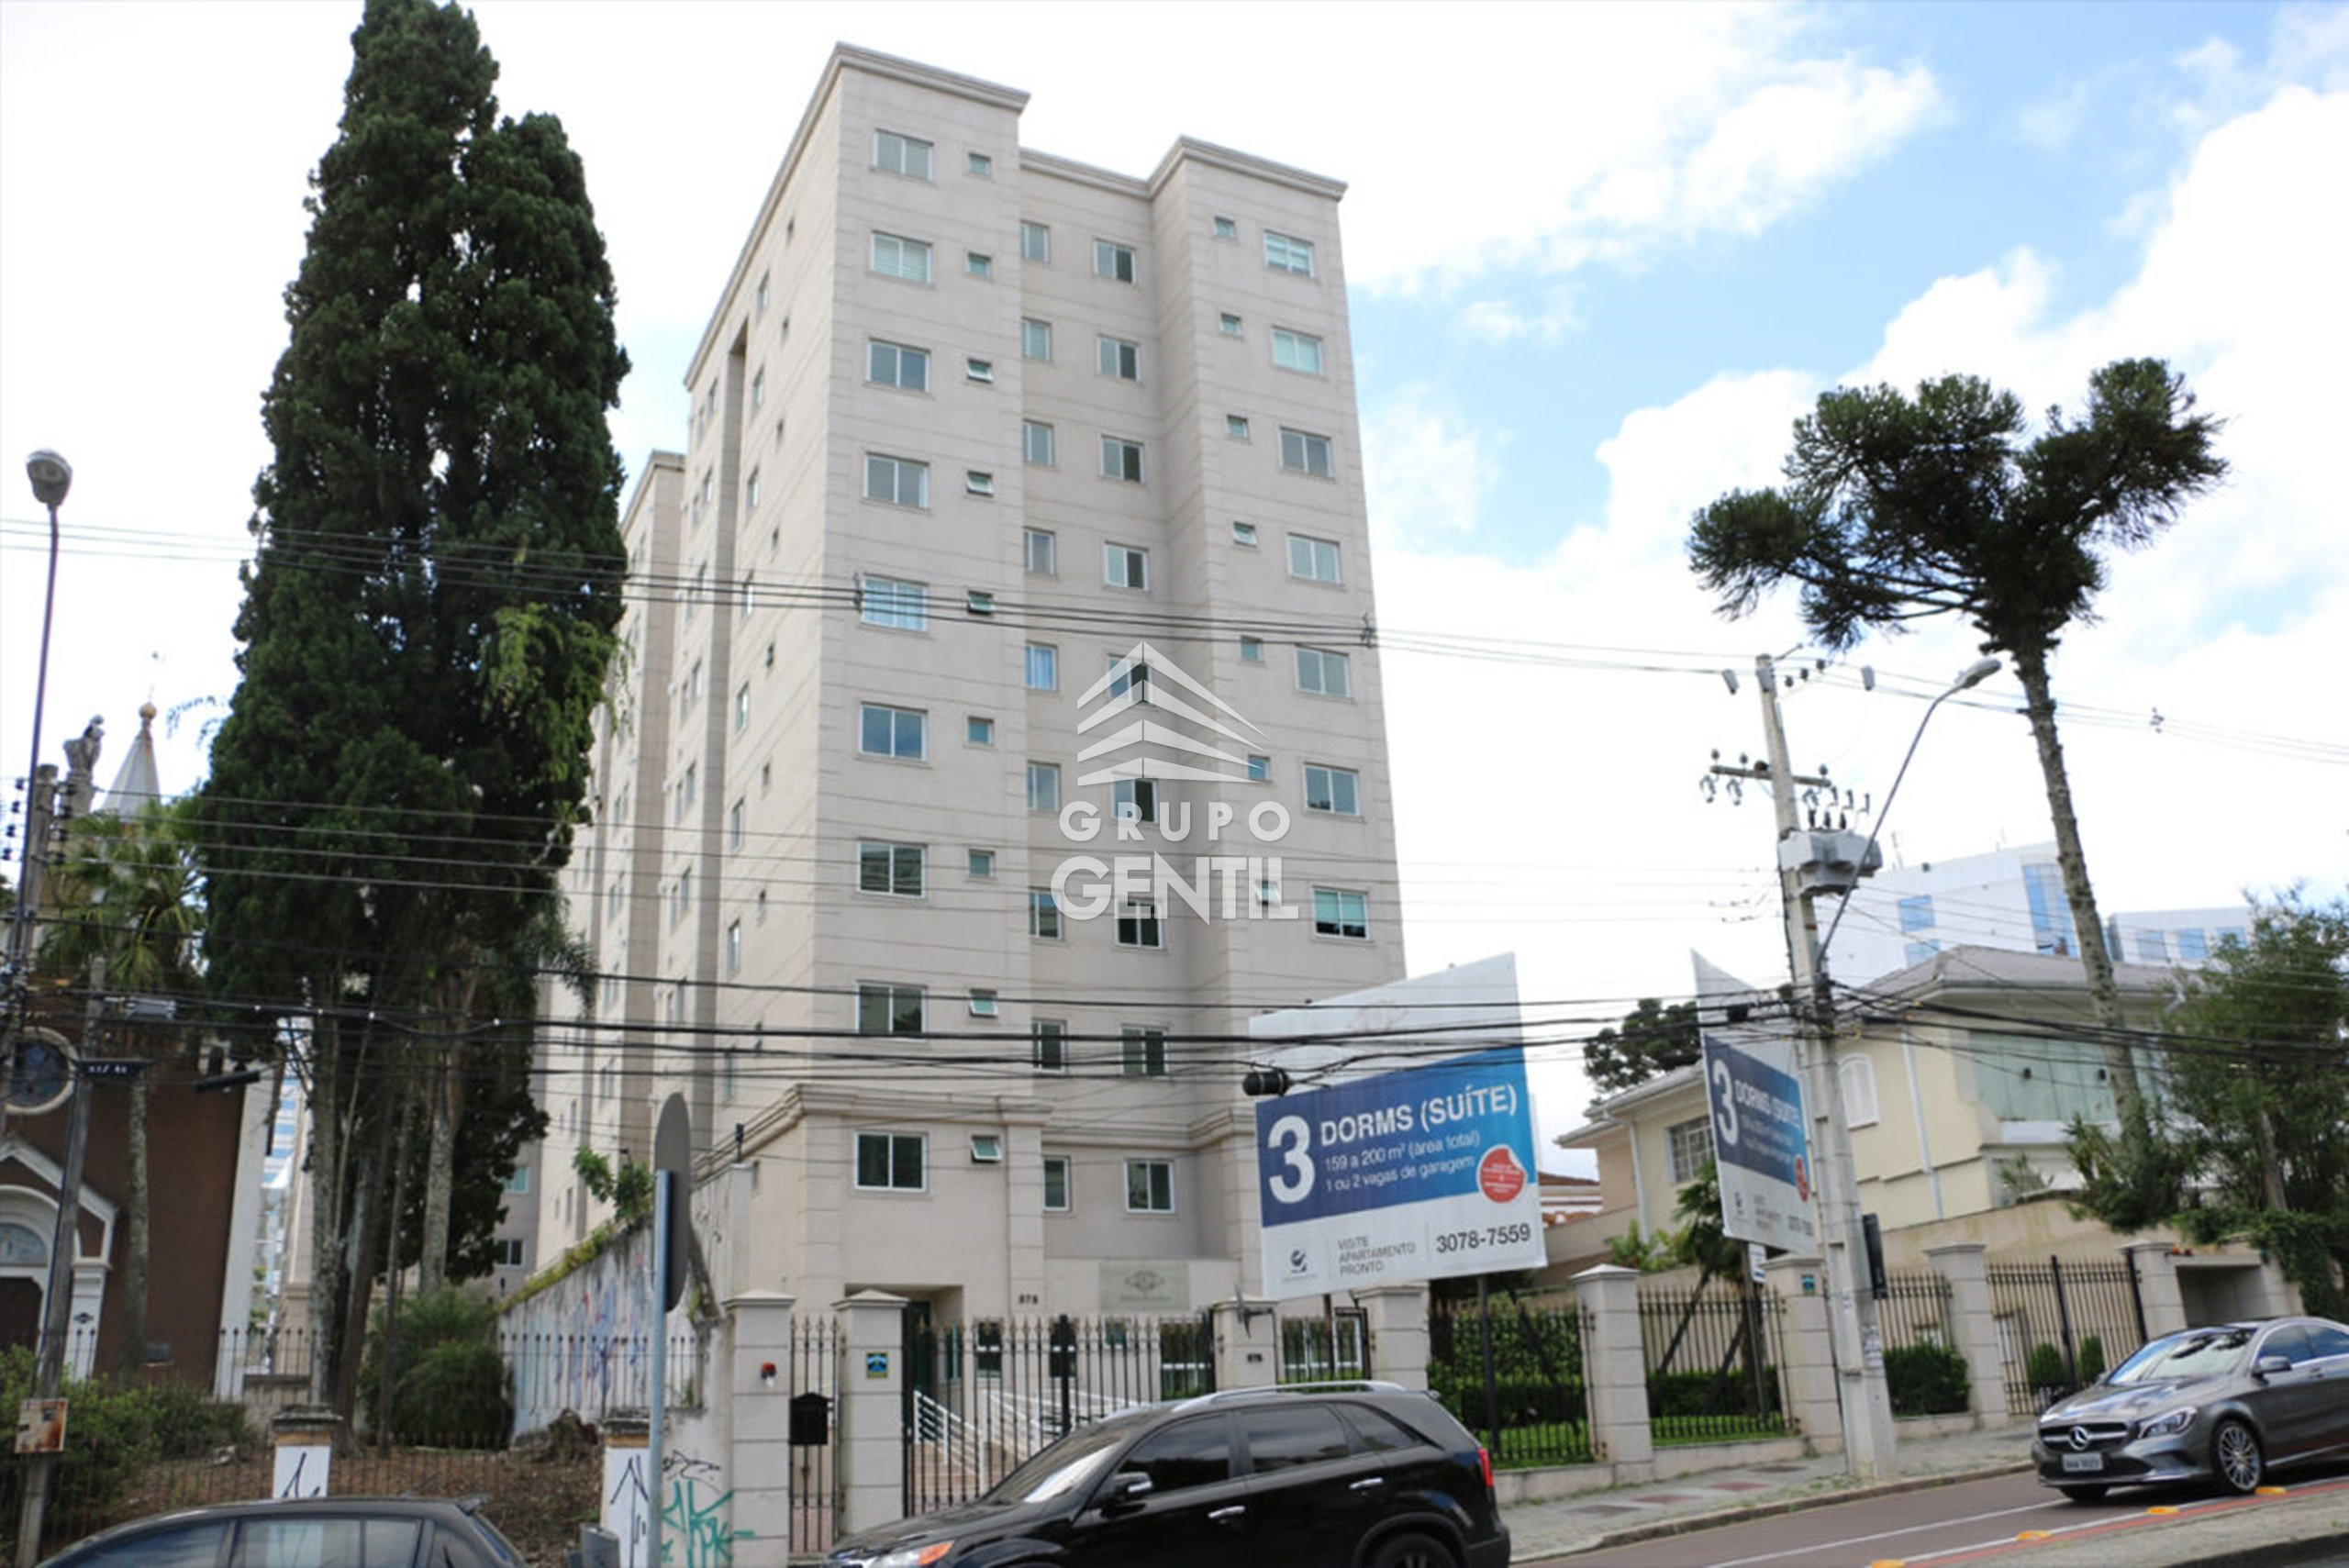 APARTAMENTO com 3 dormitórios à venda com 155.76m² por R$ 754.000,00 no bairro Alto da Glória - CURITIBA / PR